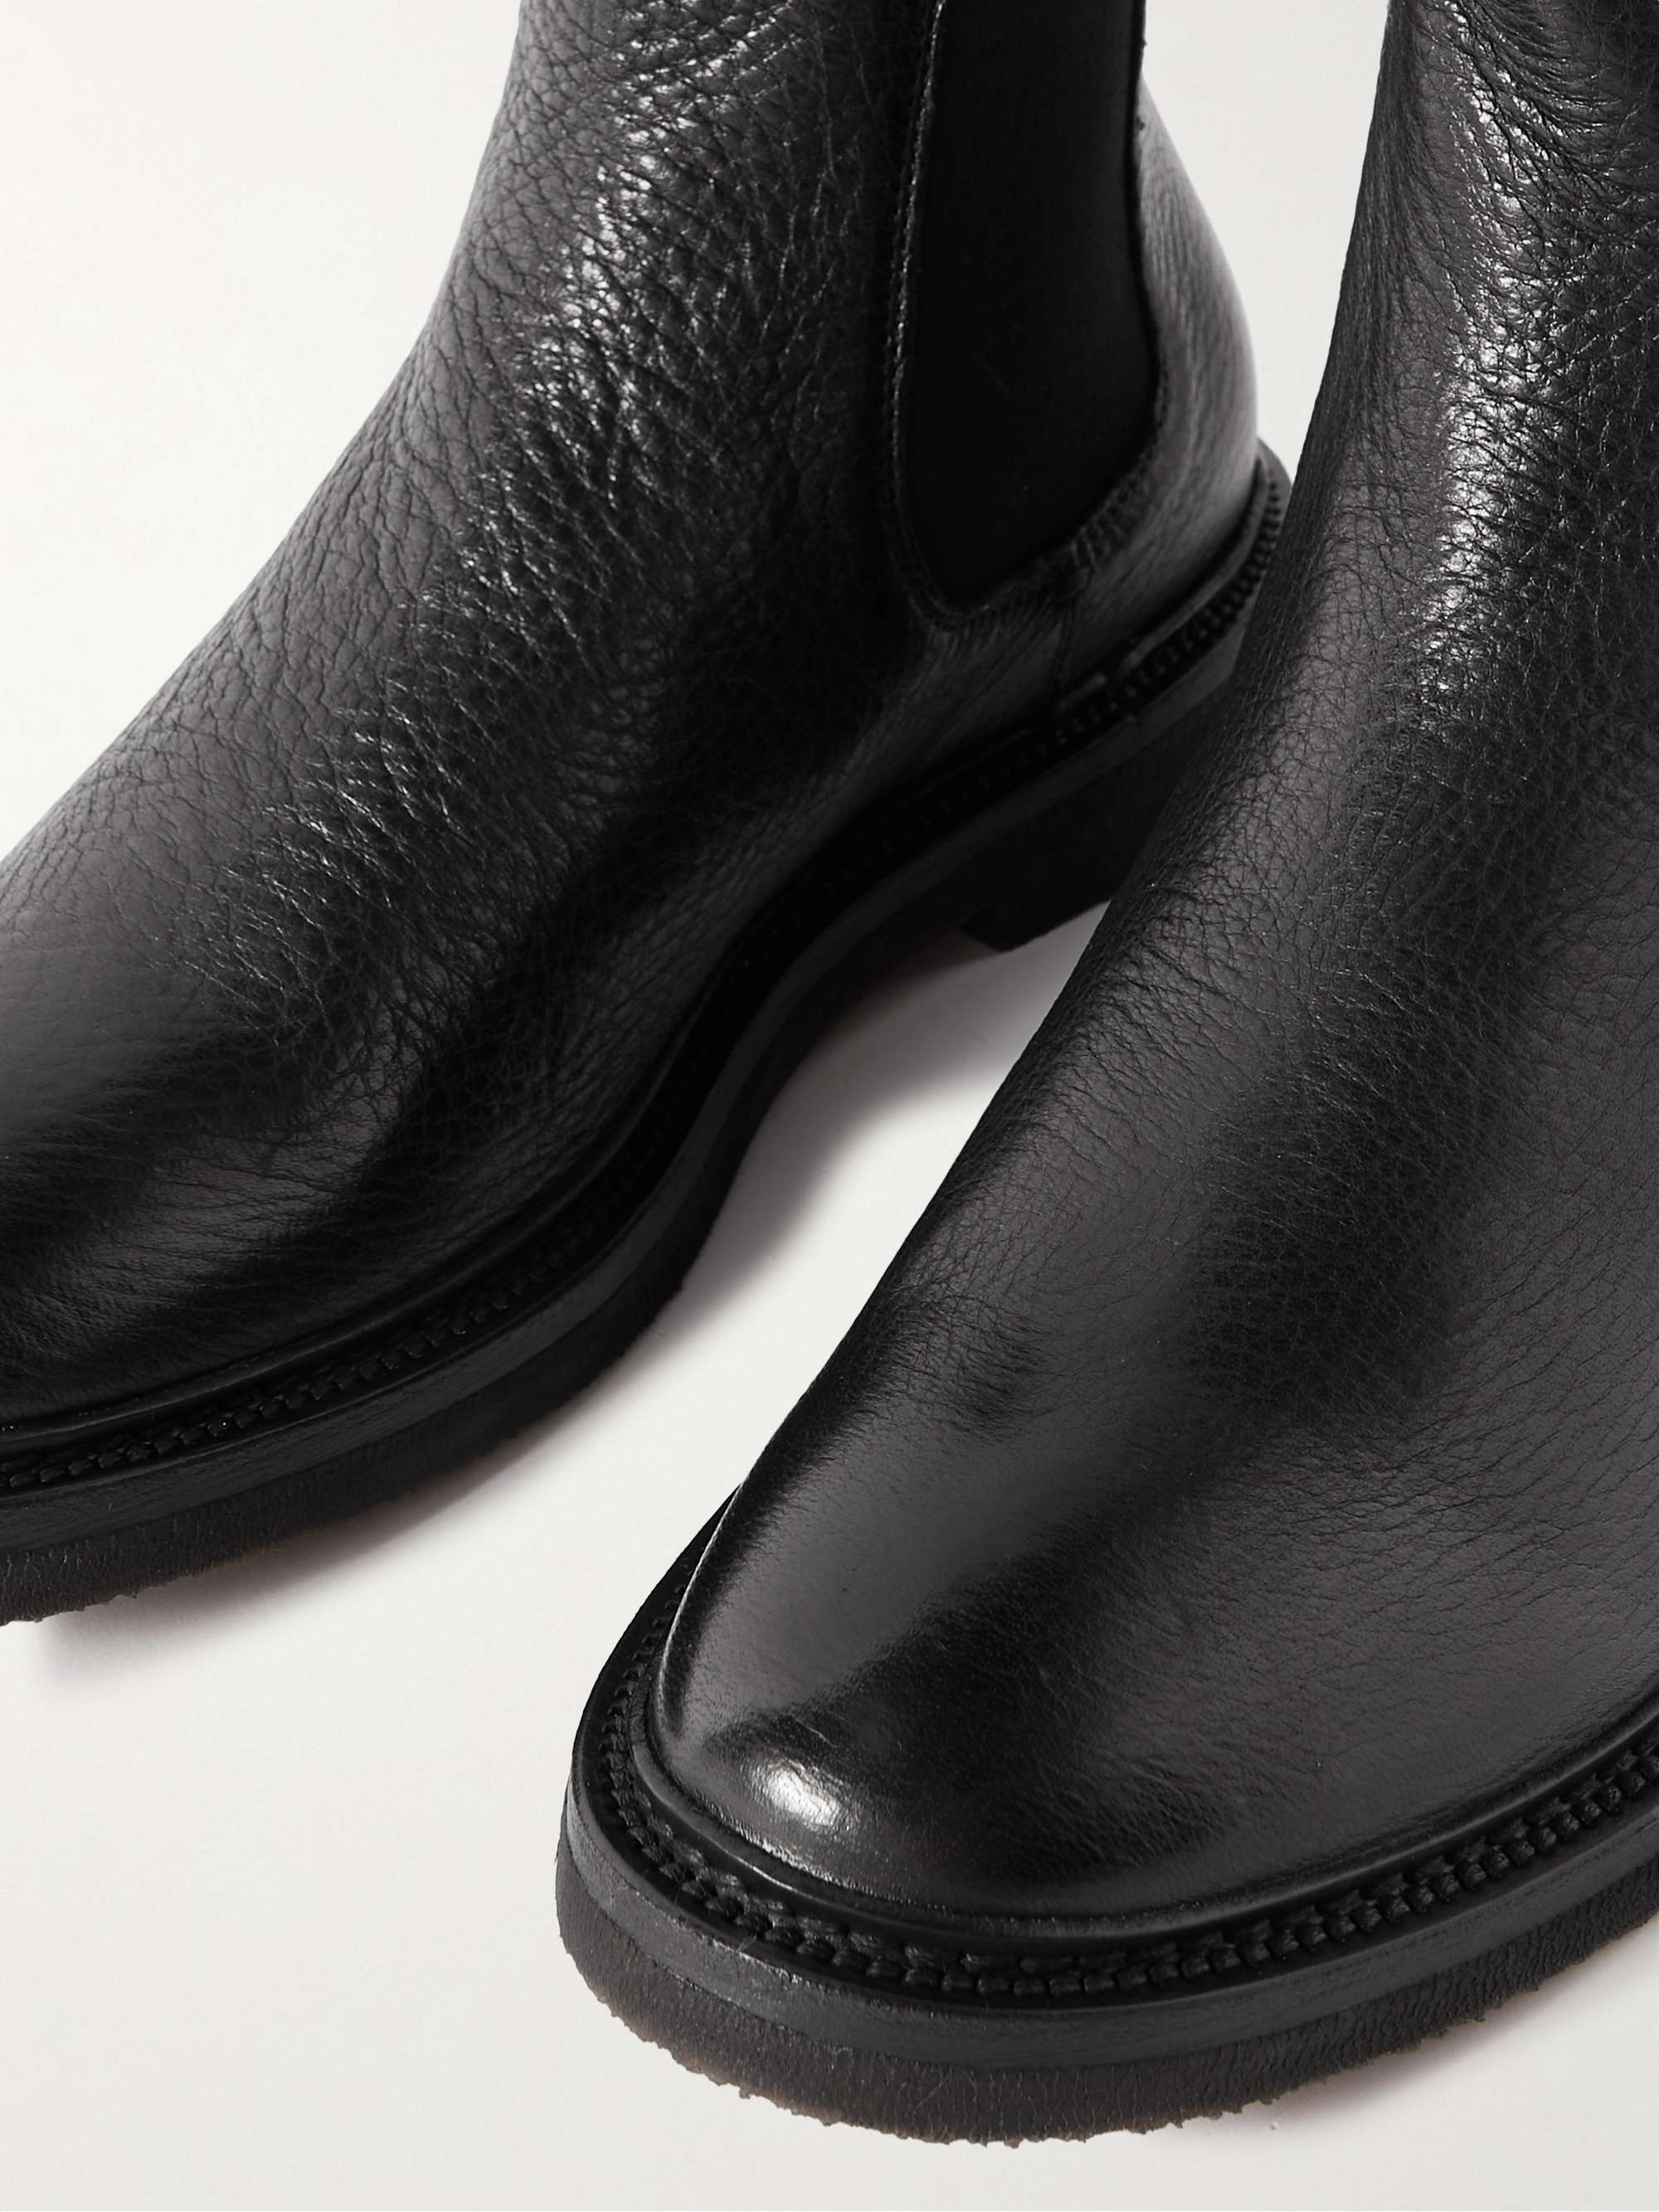 OFFICINE CREATIVE Hopkins Full-Grain Leather Chelsea Boots for Men | MR ...